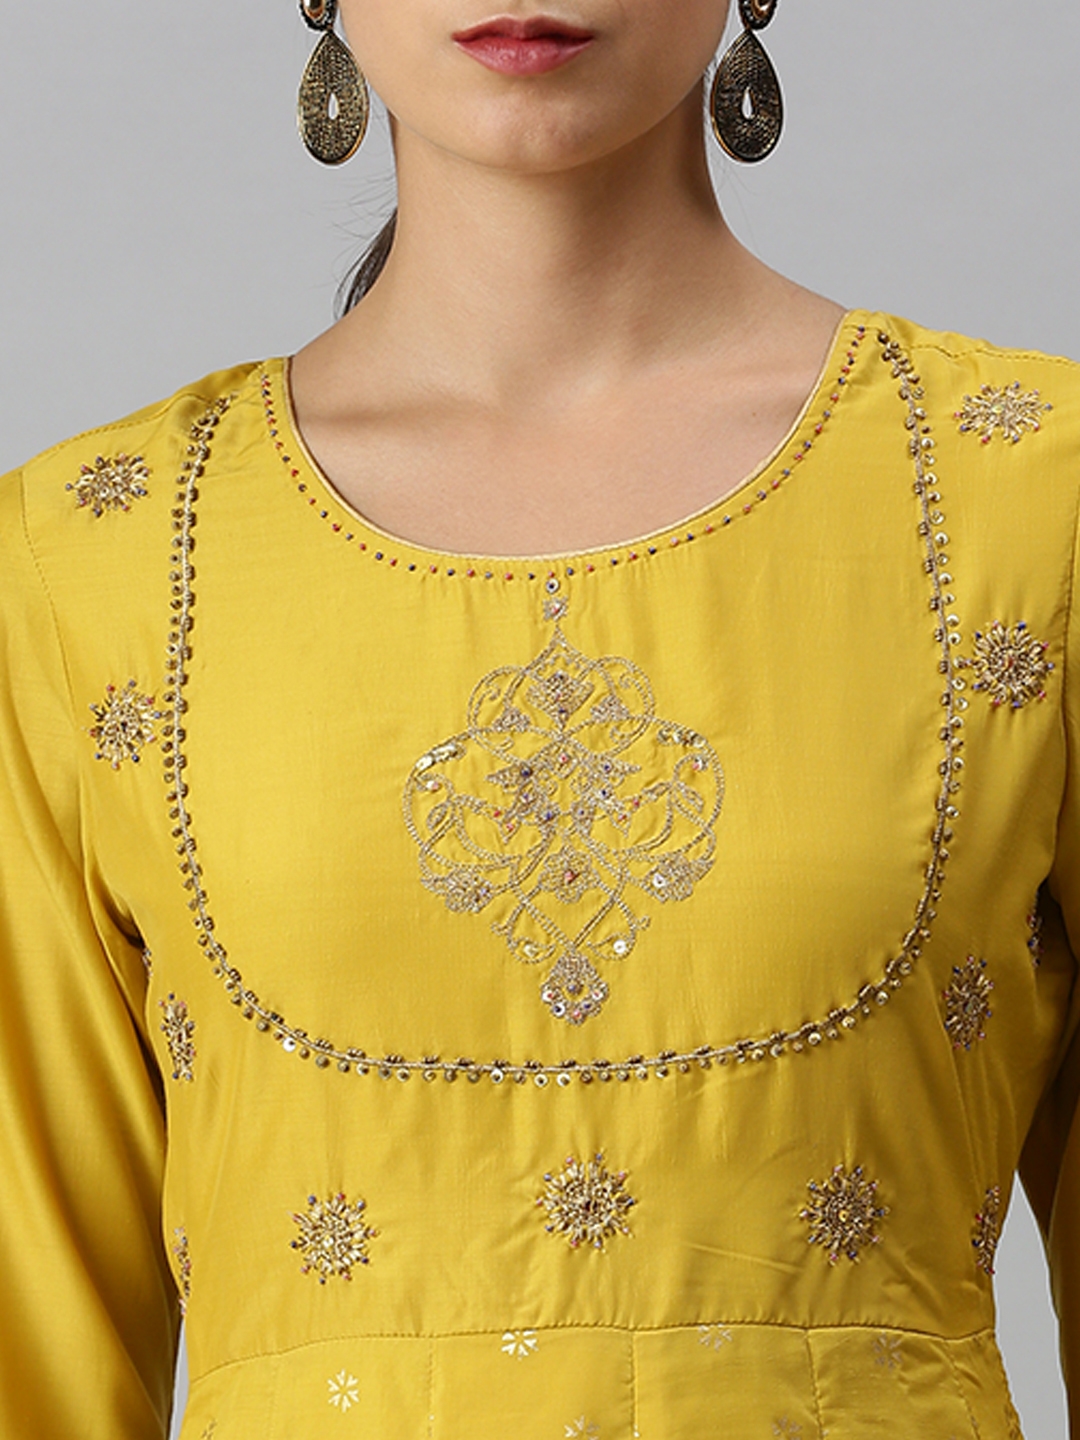 Women's Yellow Cotton Blend Printed Regular Kurtas